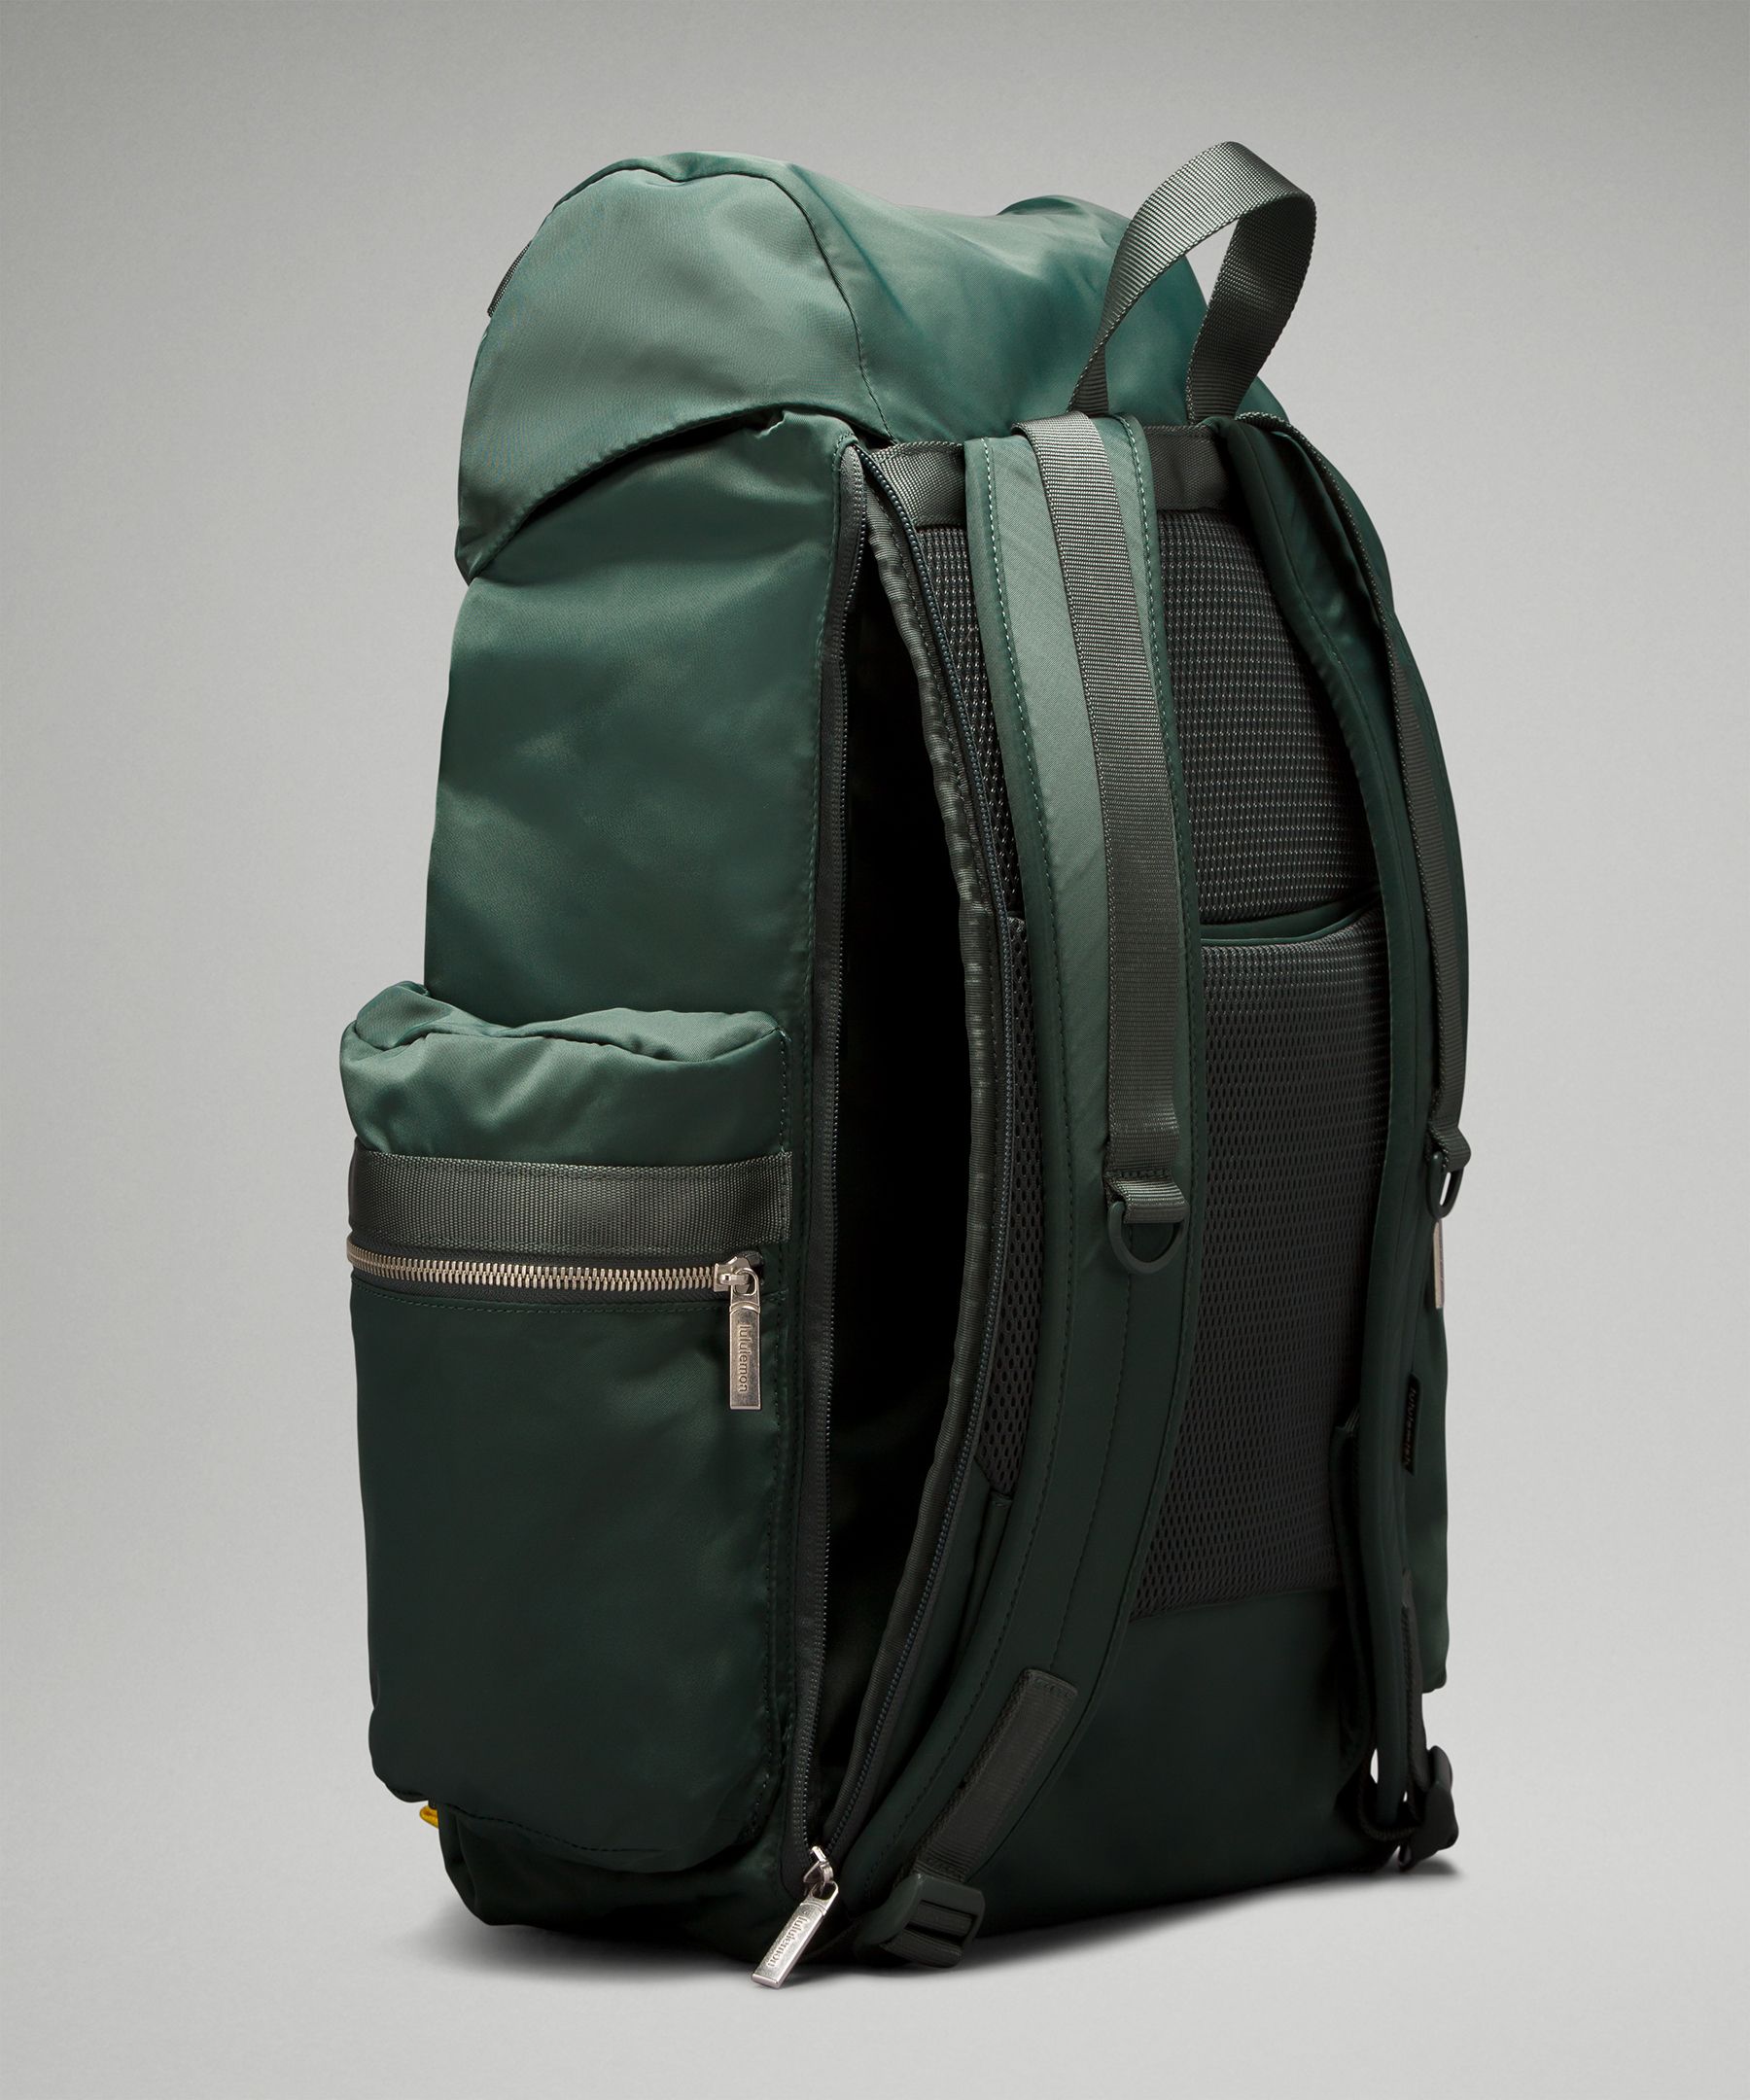 Wunderlust Backpack 25L